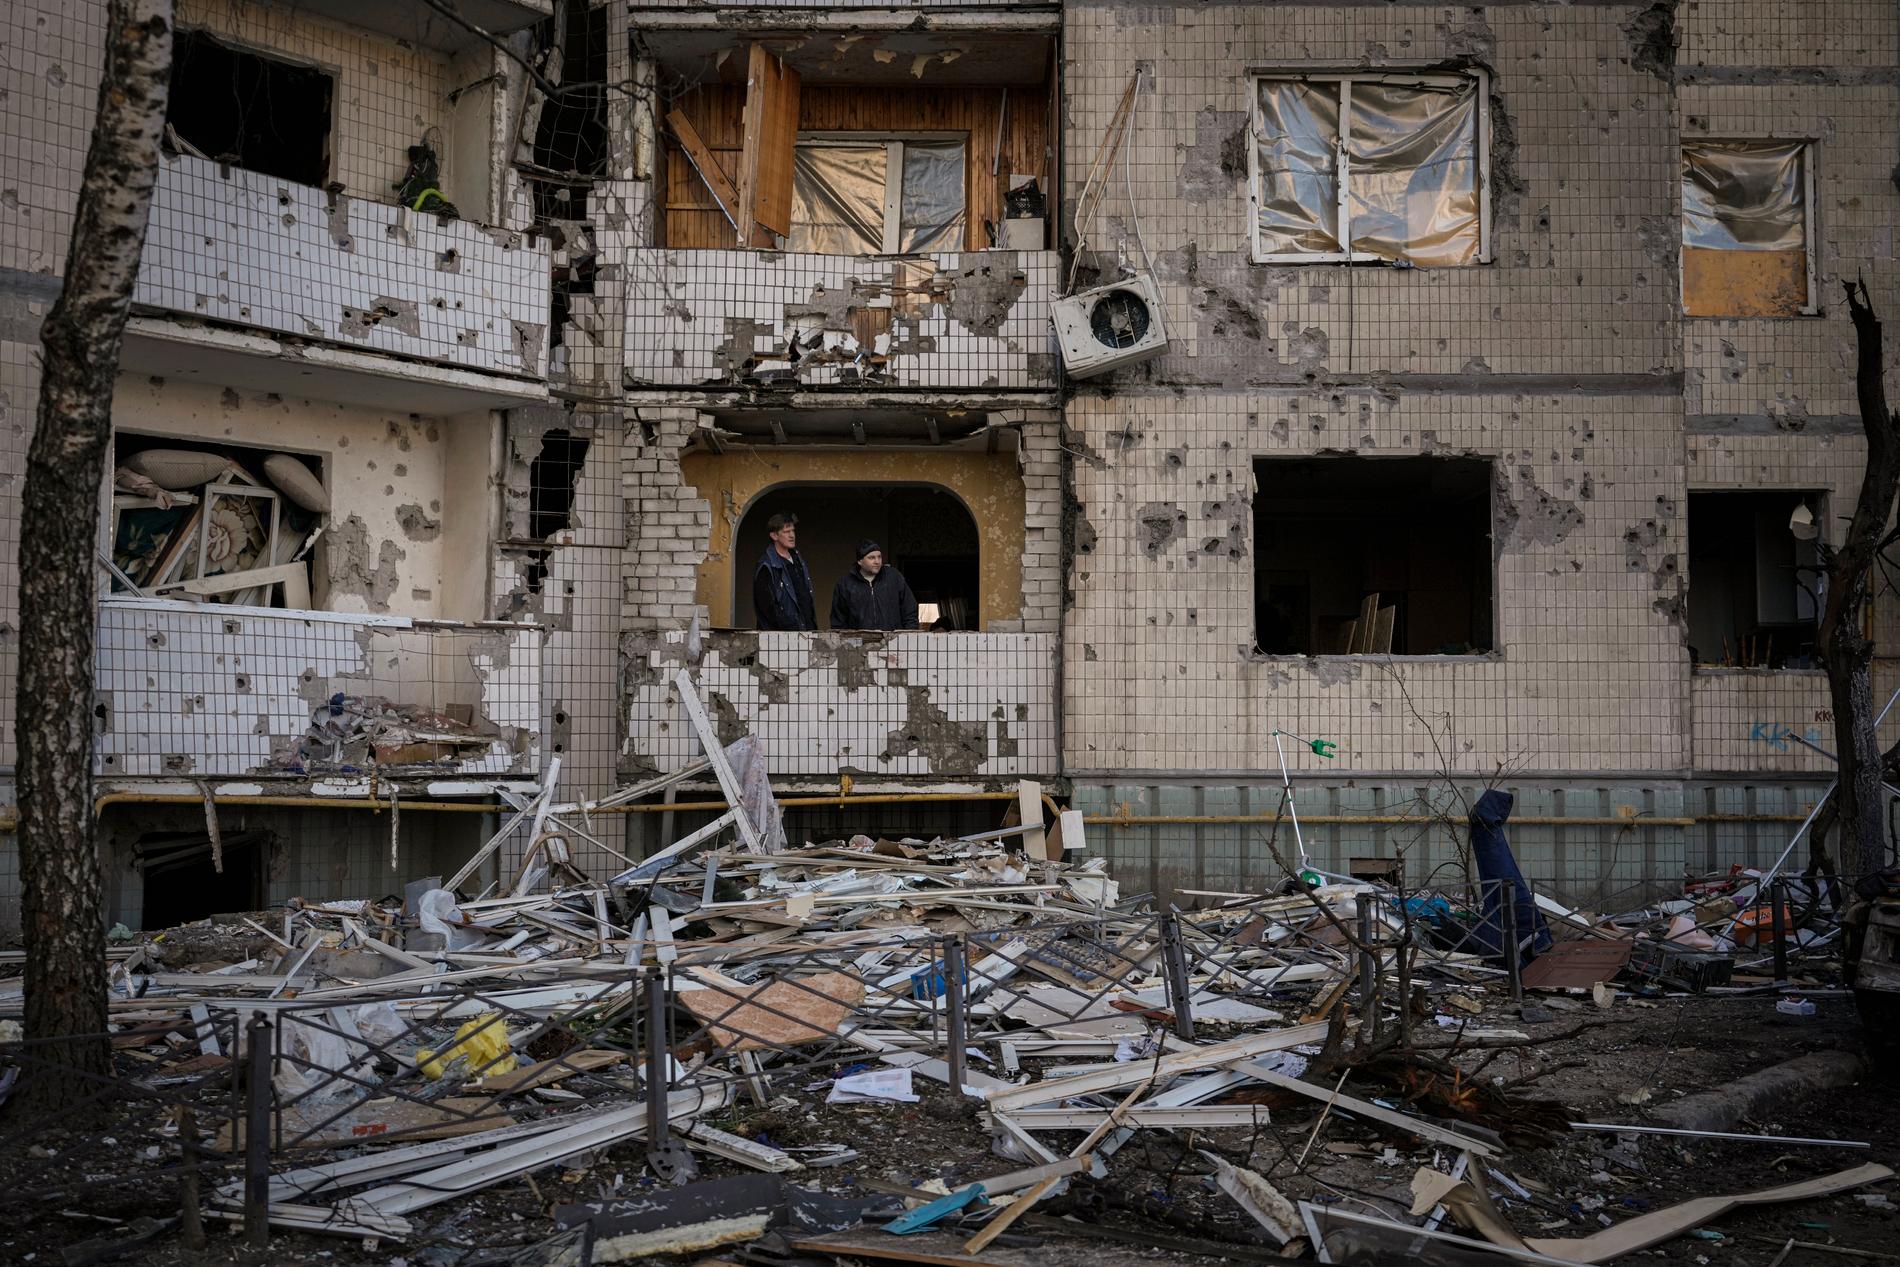 Ett av många demolerade bostadshus i Mariupol. ”Jag förstår inte  varför man bombar vanliga hus, där vanliga människor bor, säger Lidia. Hennes eget hus träffades också av ryska missiler. 